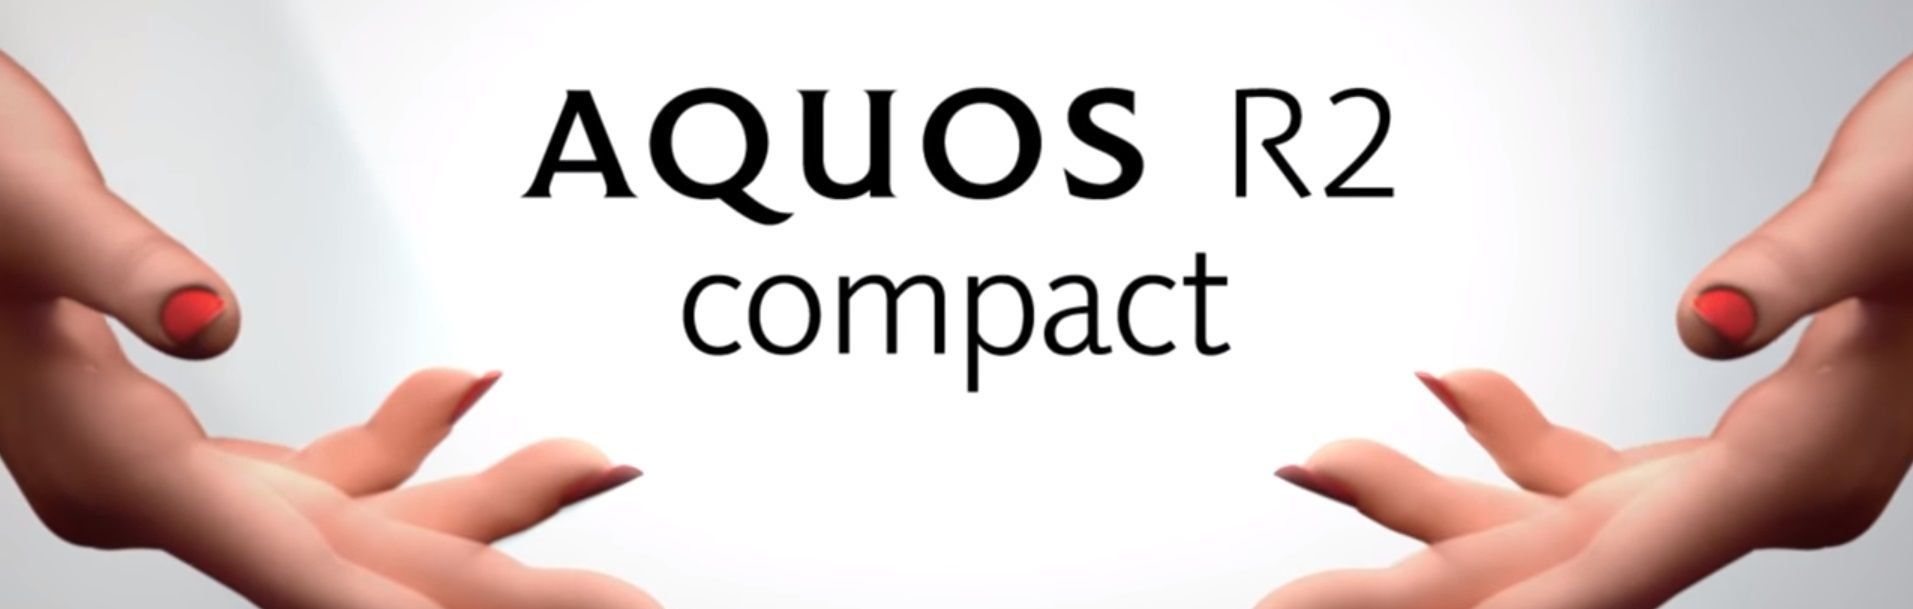 Telefon pintar Sharp Aquos R2 Compact - kelebihan dan kekurangan